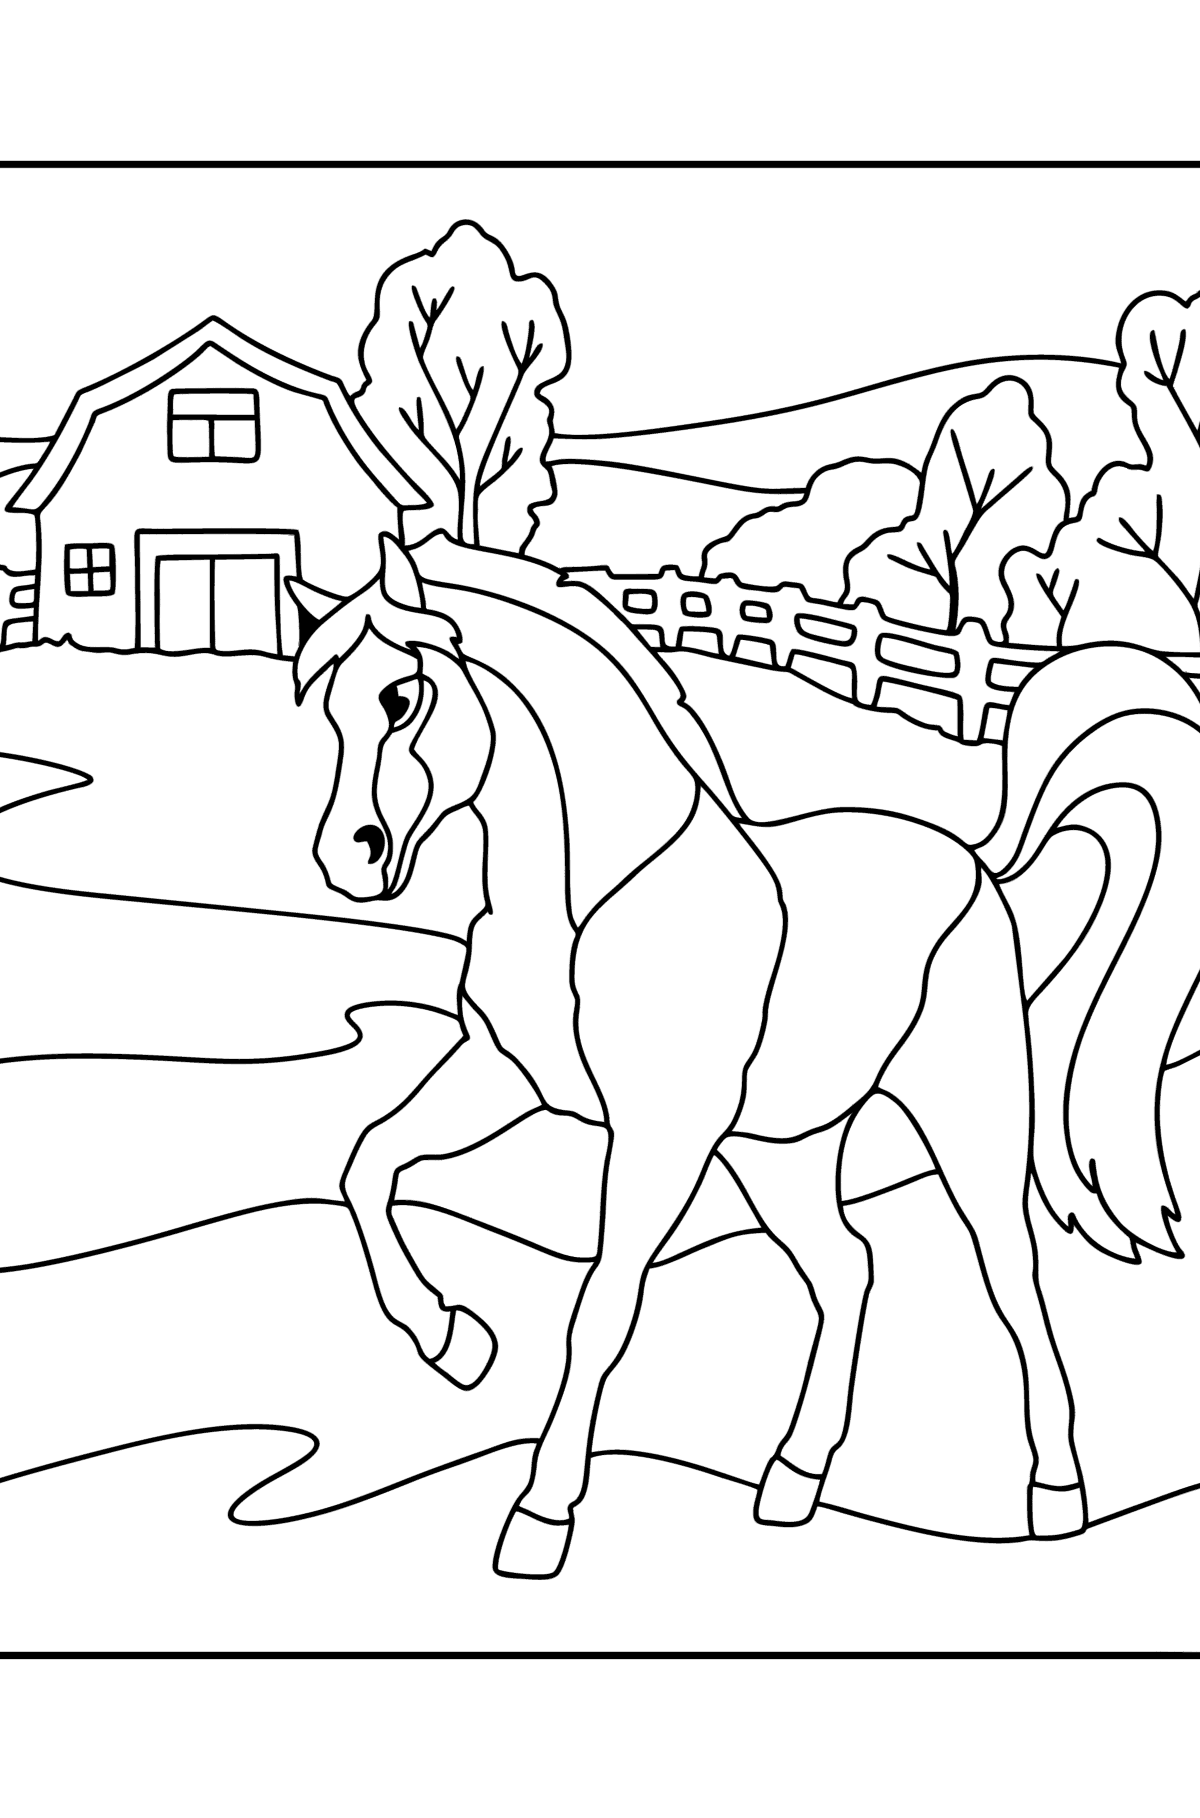 Målarbild Häst på gården - Målarbilder För barn